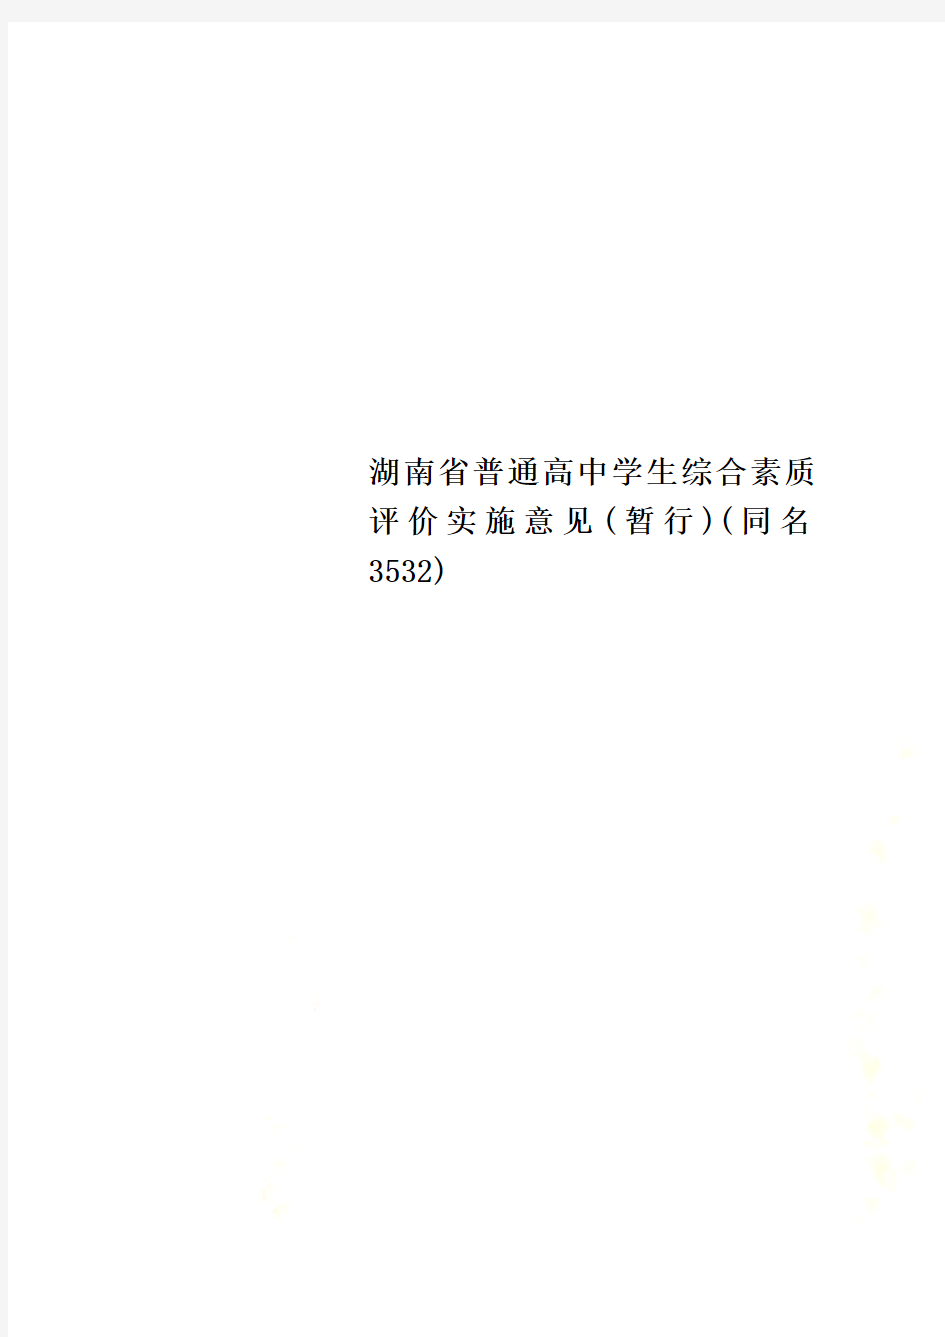 湖南省普通高中学生综合素质评价实施意见(暂行)(同名3532)